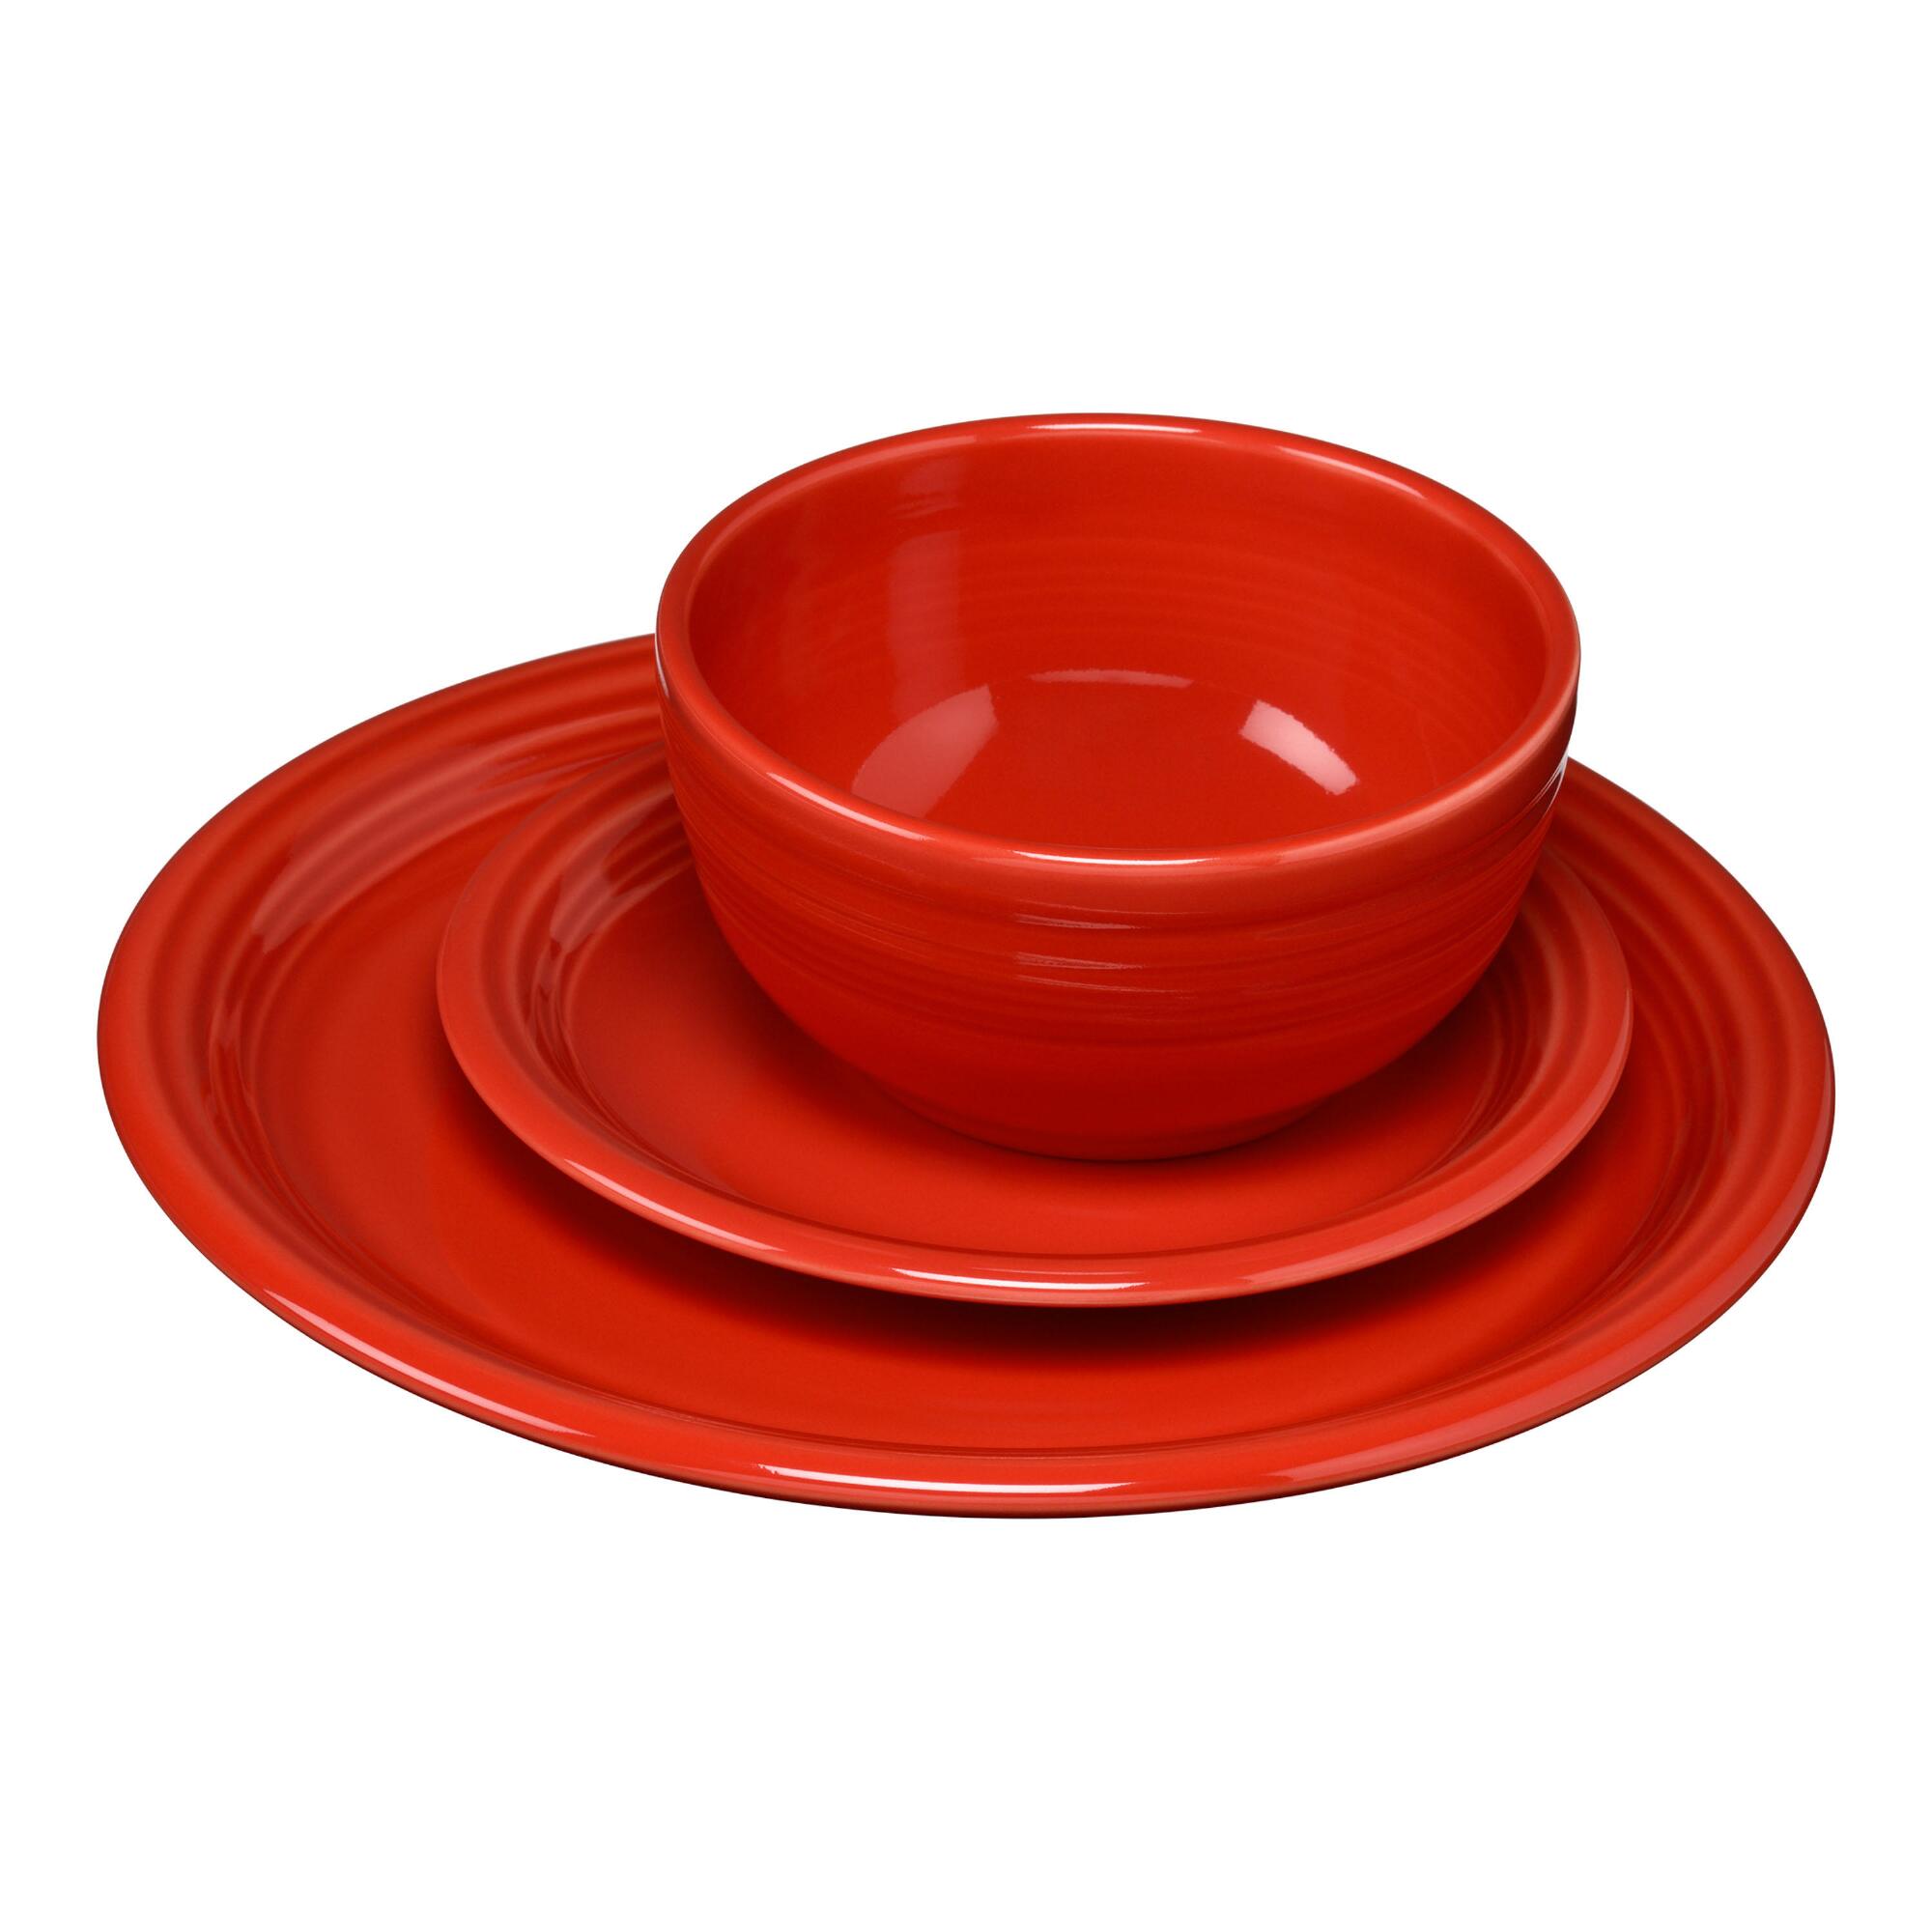 Scarlet Fiesta Bistro Dinnerware Collection by World Market